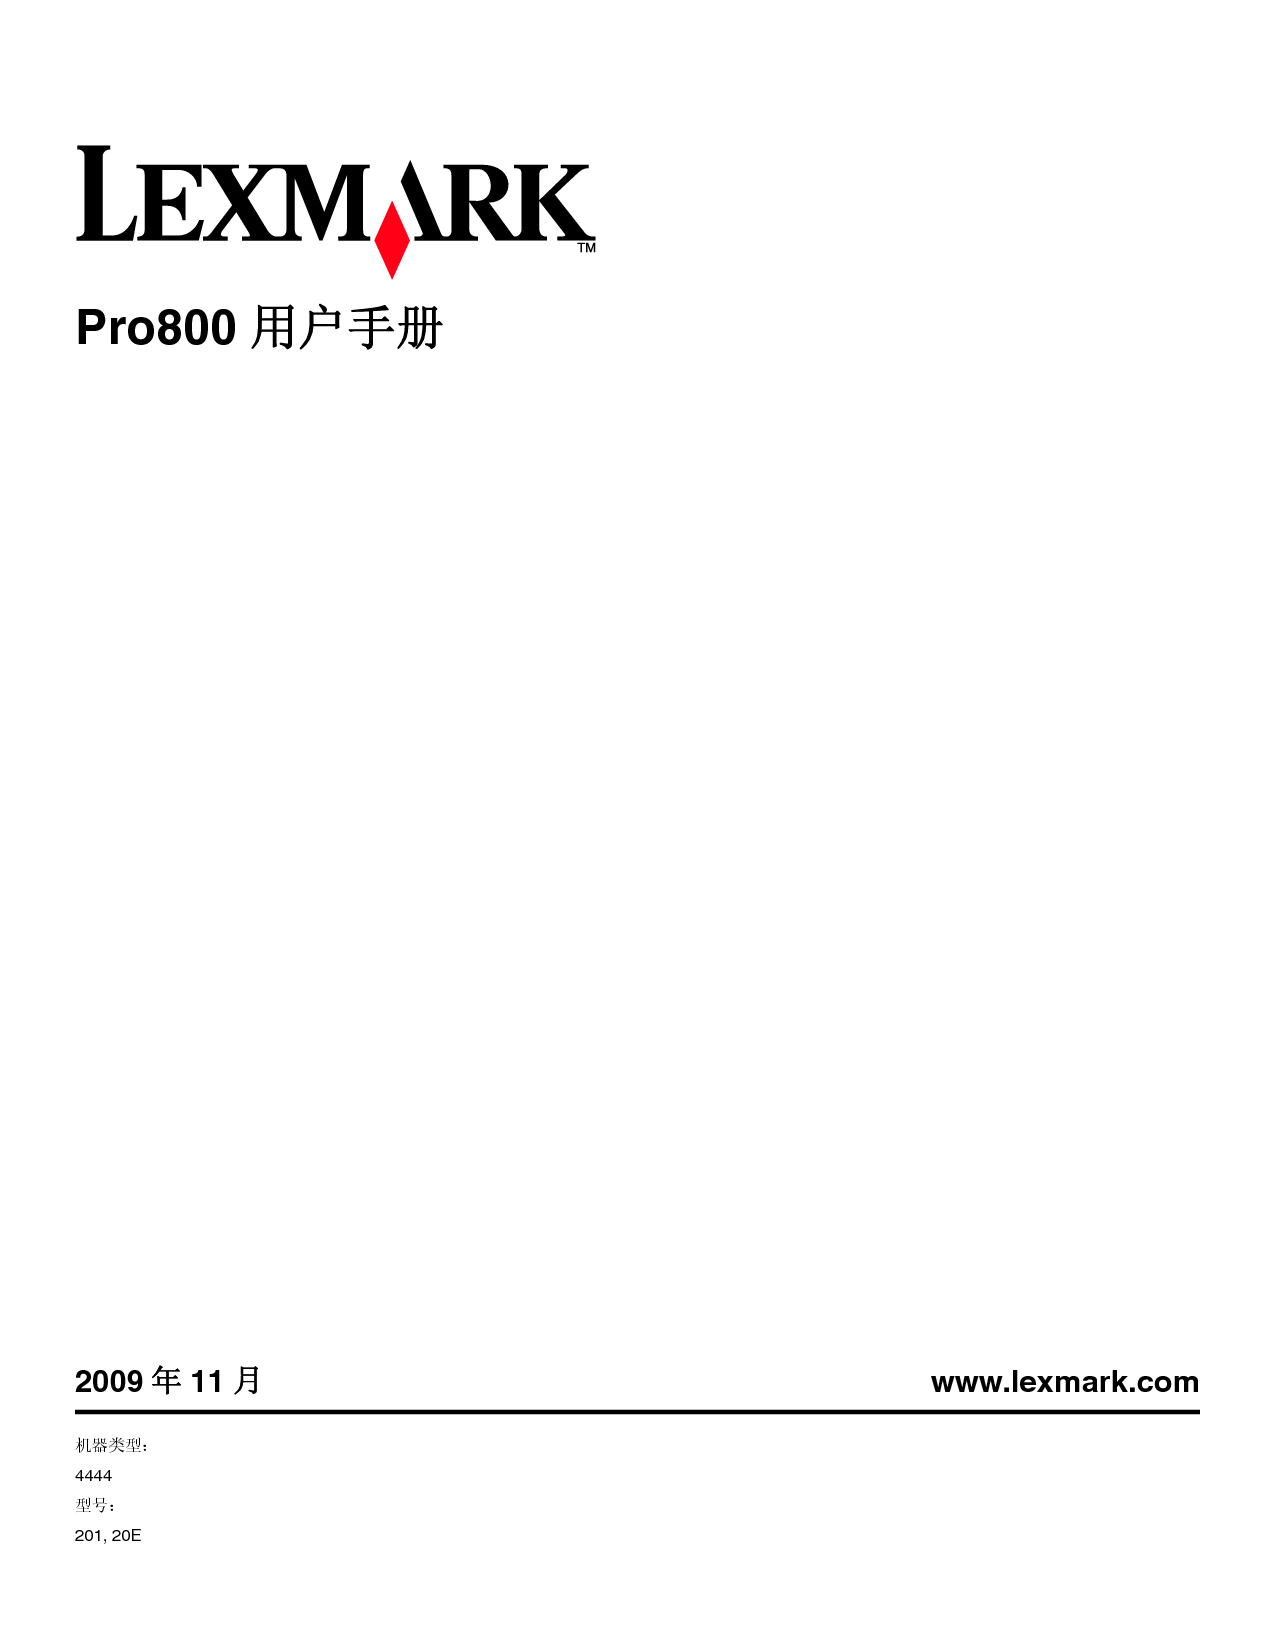 利盟 Lexmark Prestige Pro802 使用手册 封面